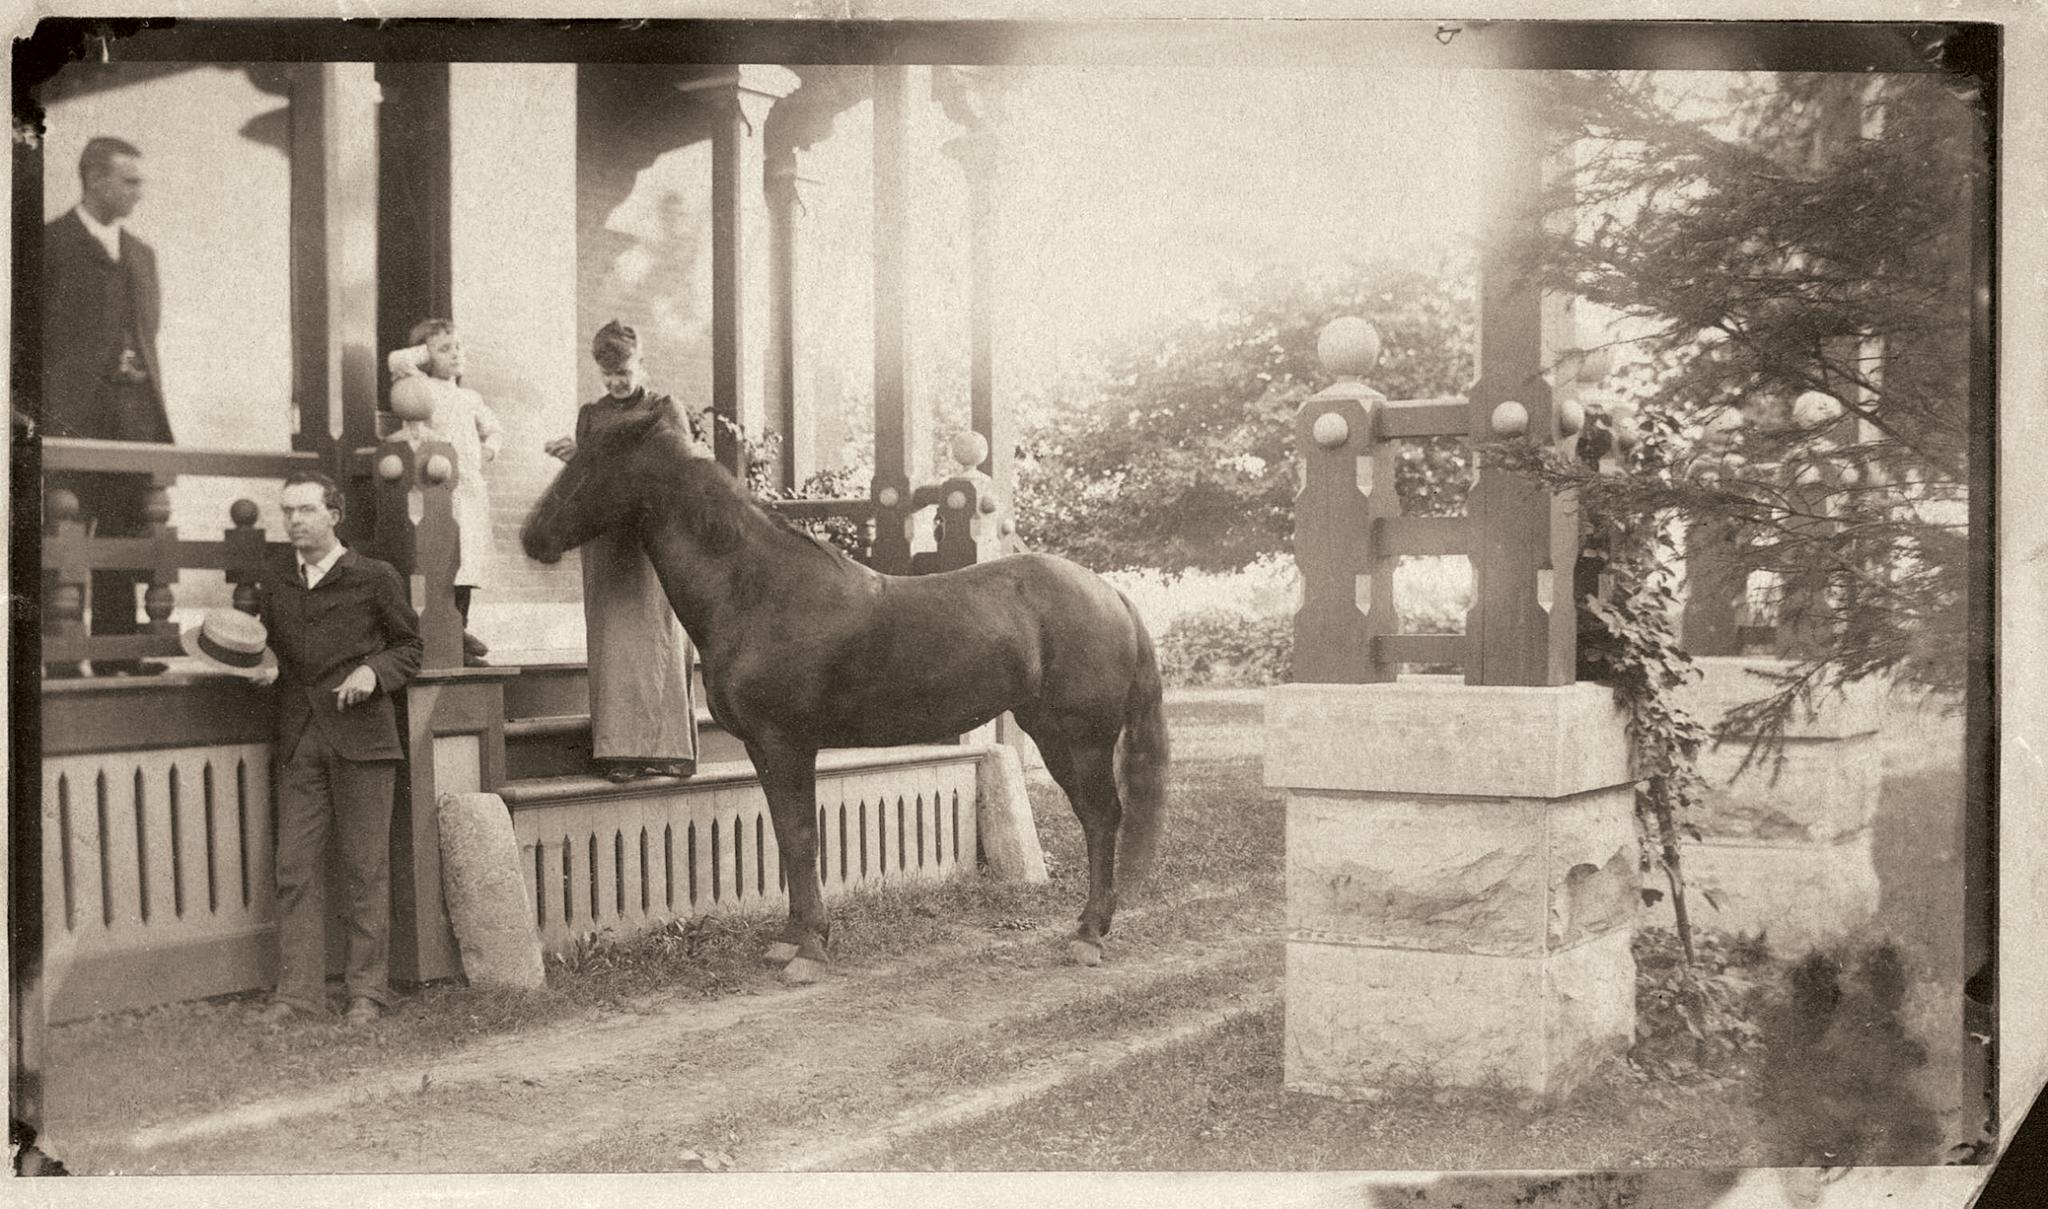 Visitors at Pinecraig, circa 1900
